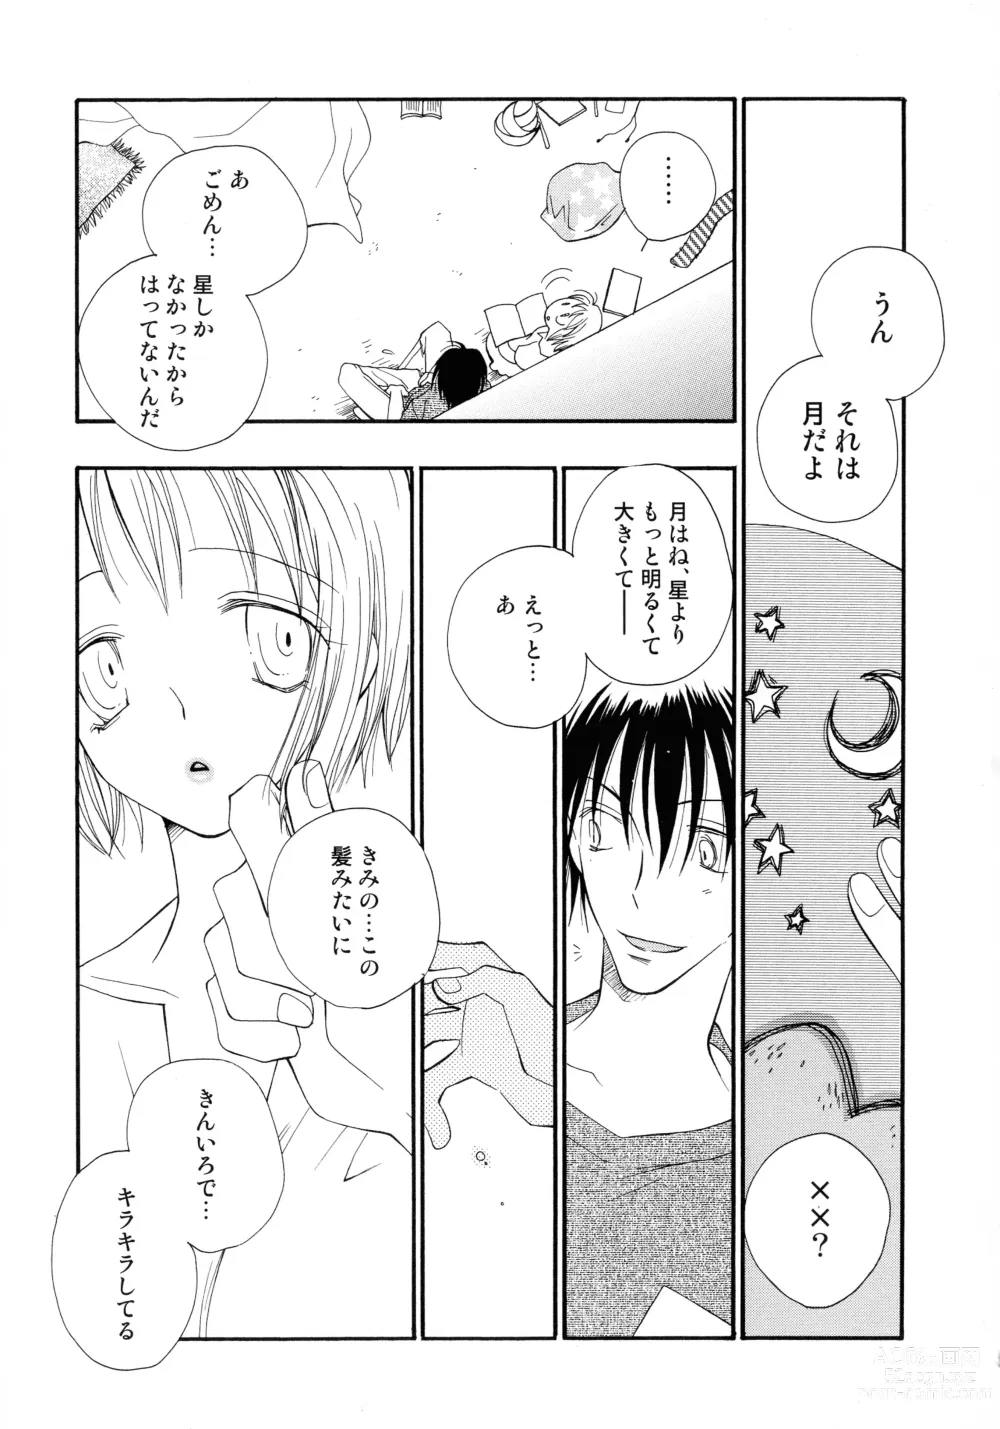 Page 194 of manga Cherry♥Pai Shinsouban